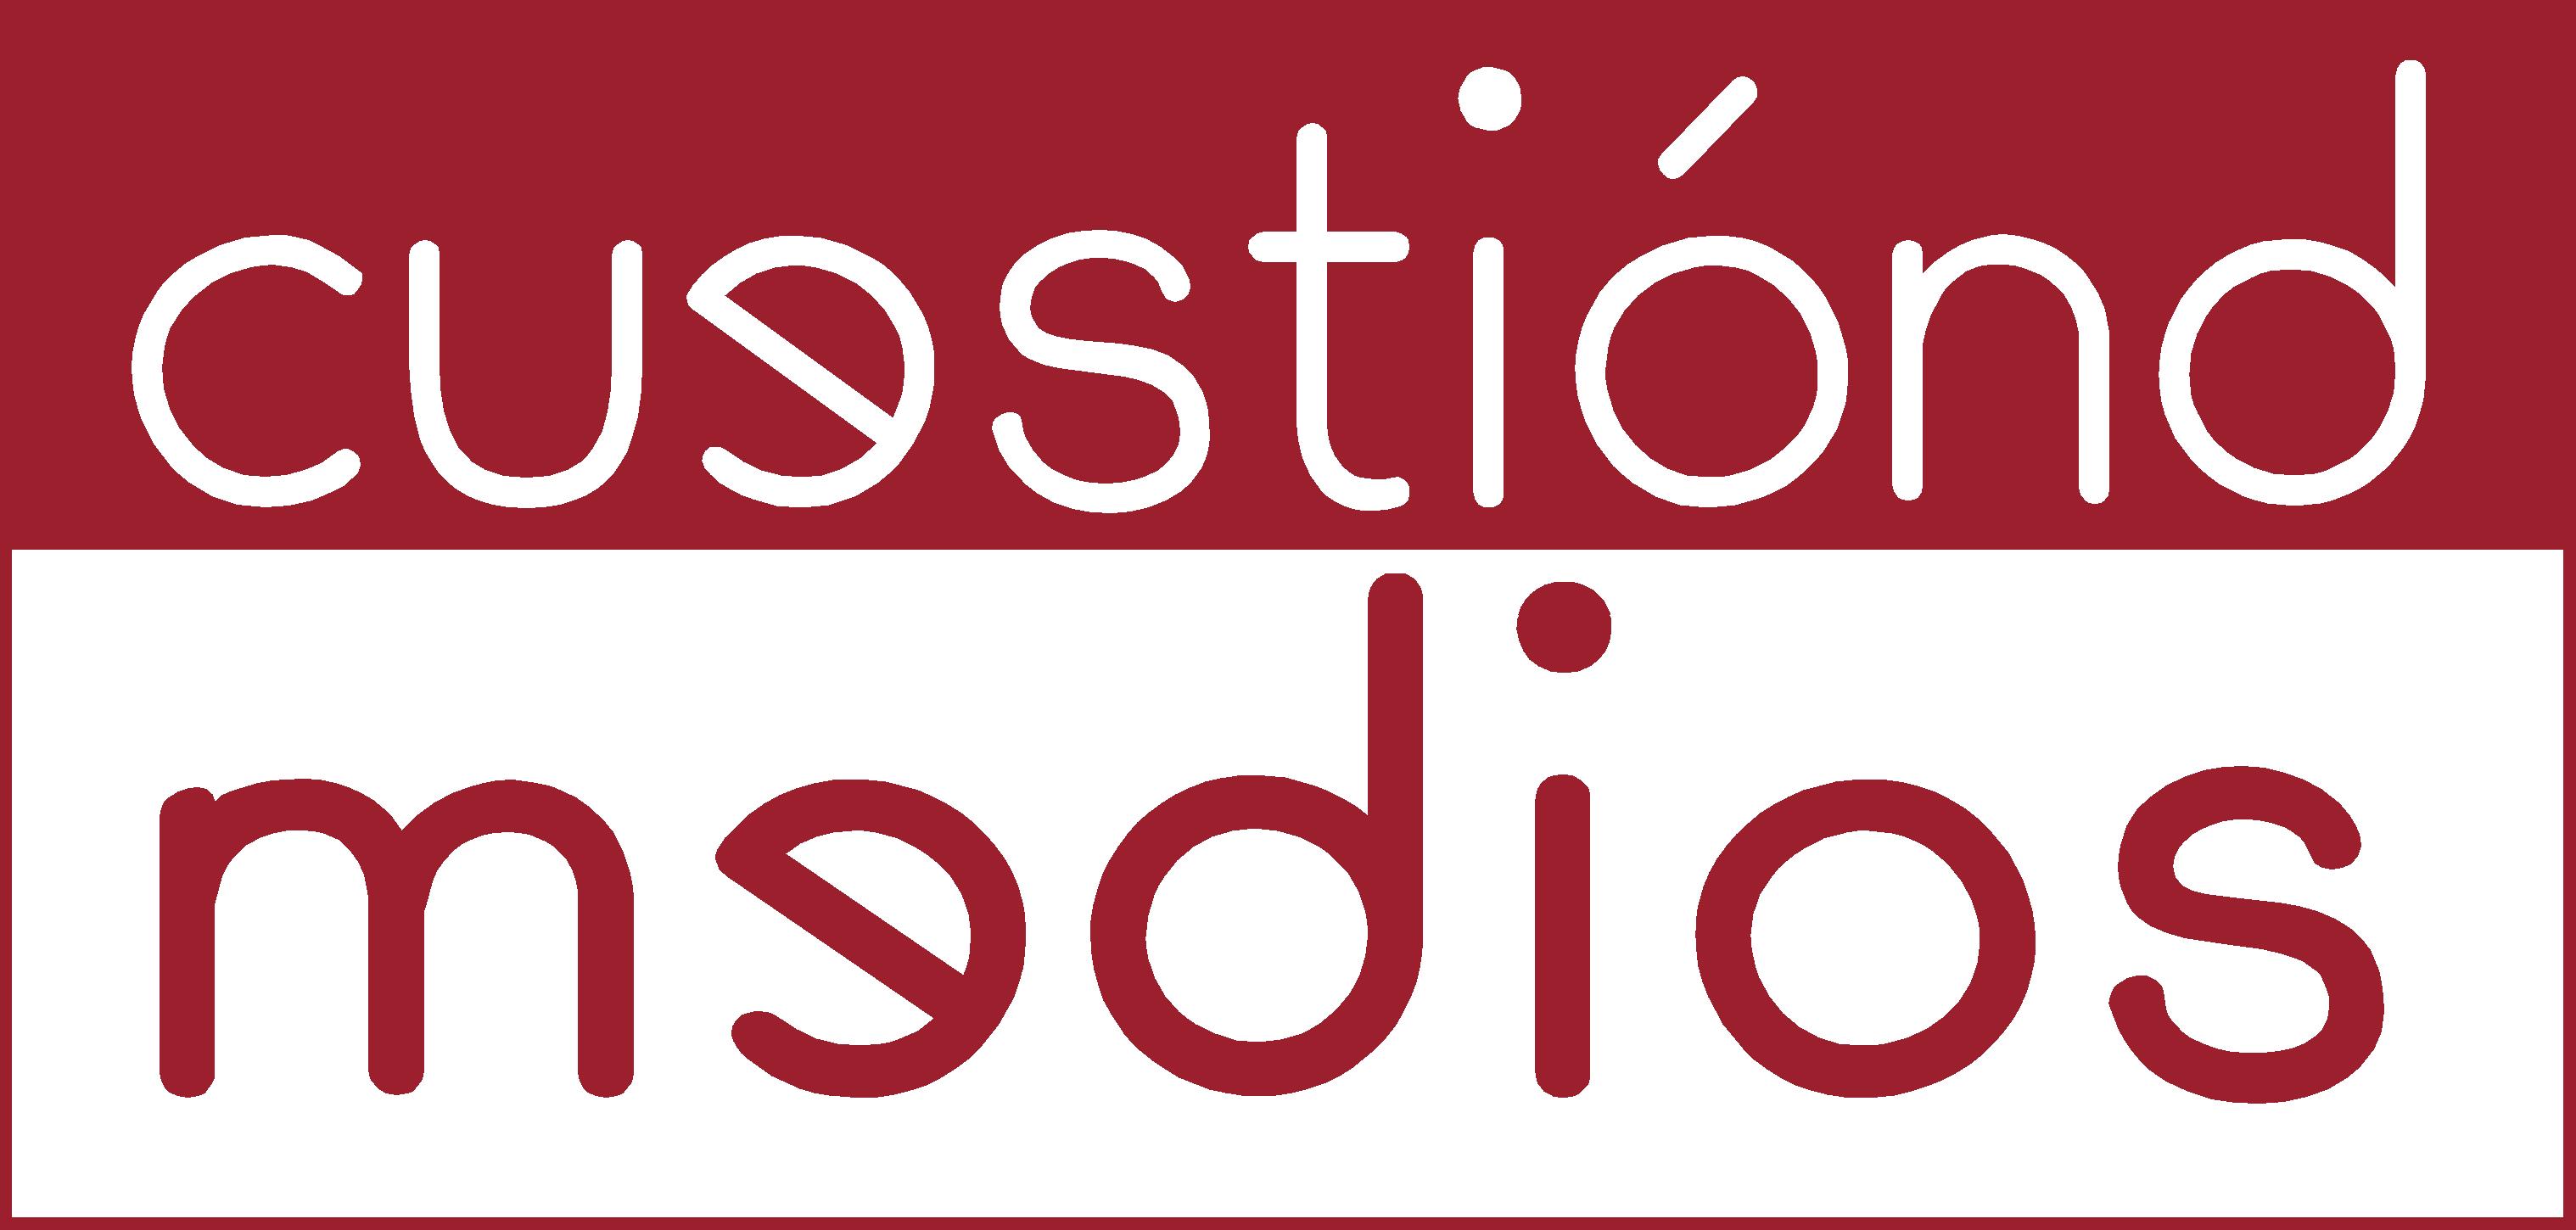 Cuestion-Logo_alta1.jpg